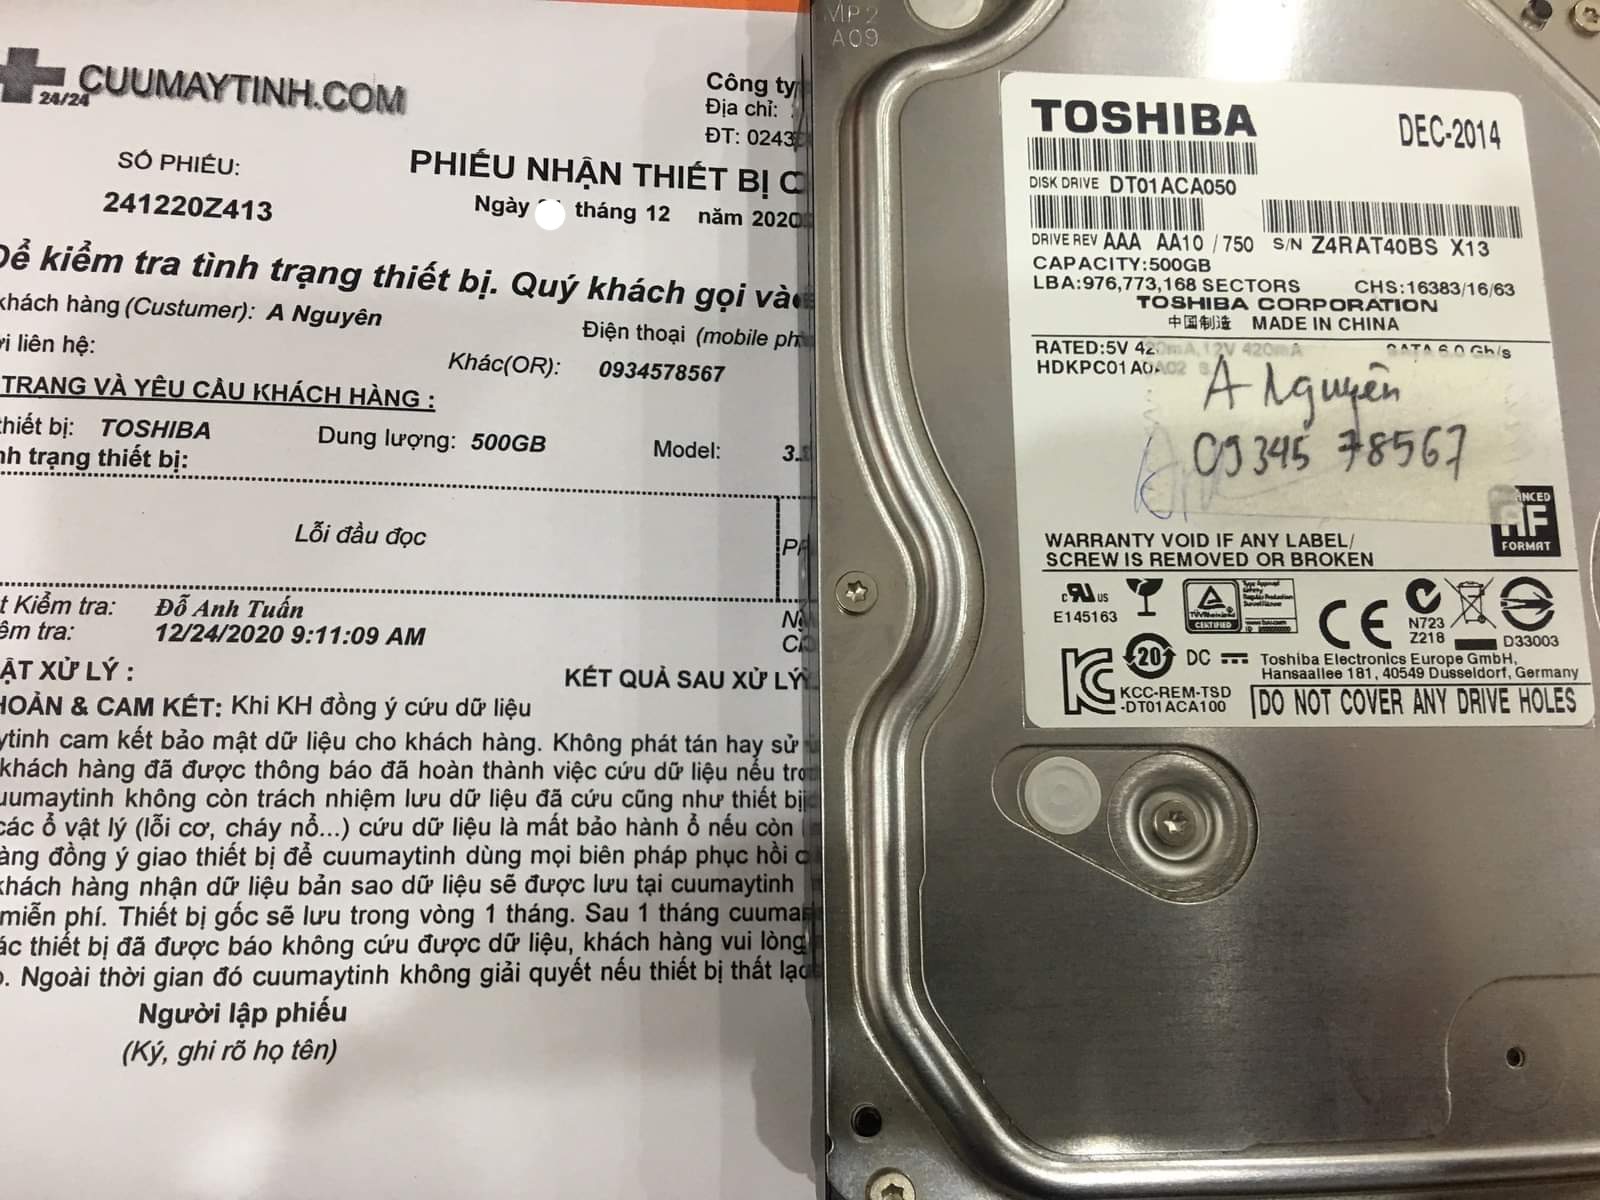 Lấy dữ liệu ổ cứng Toshiba 500GB lỗi đầu đọc - 25/12/2020 - cuumaytinh